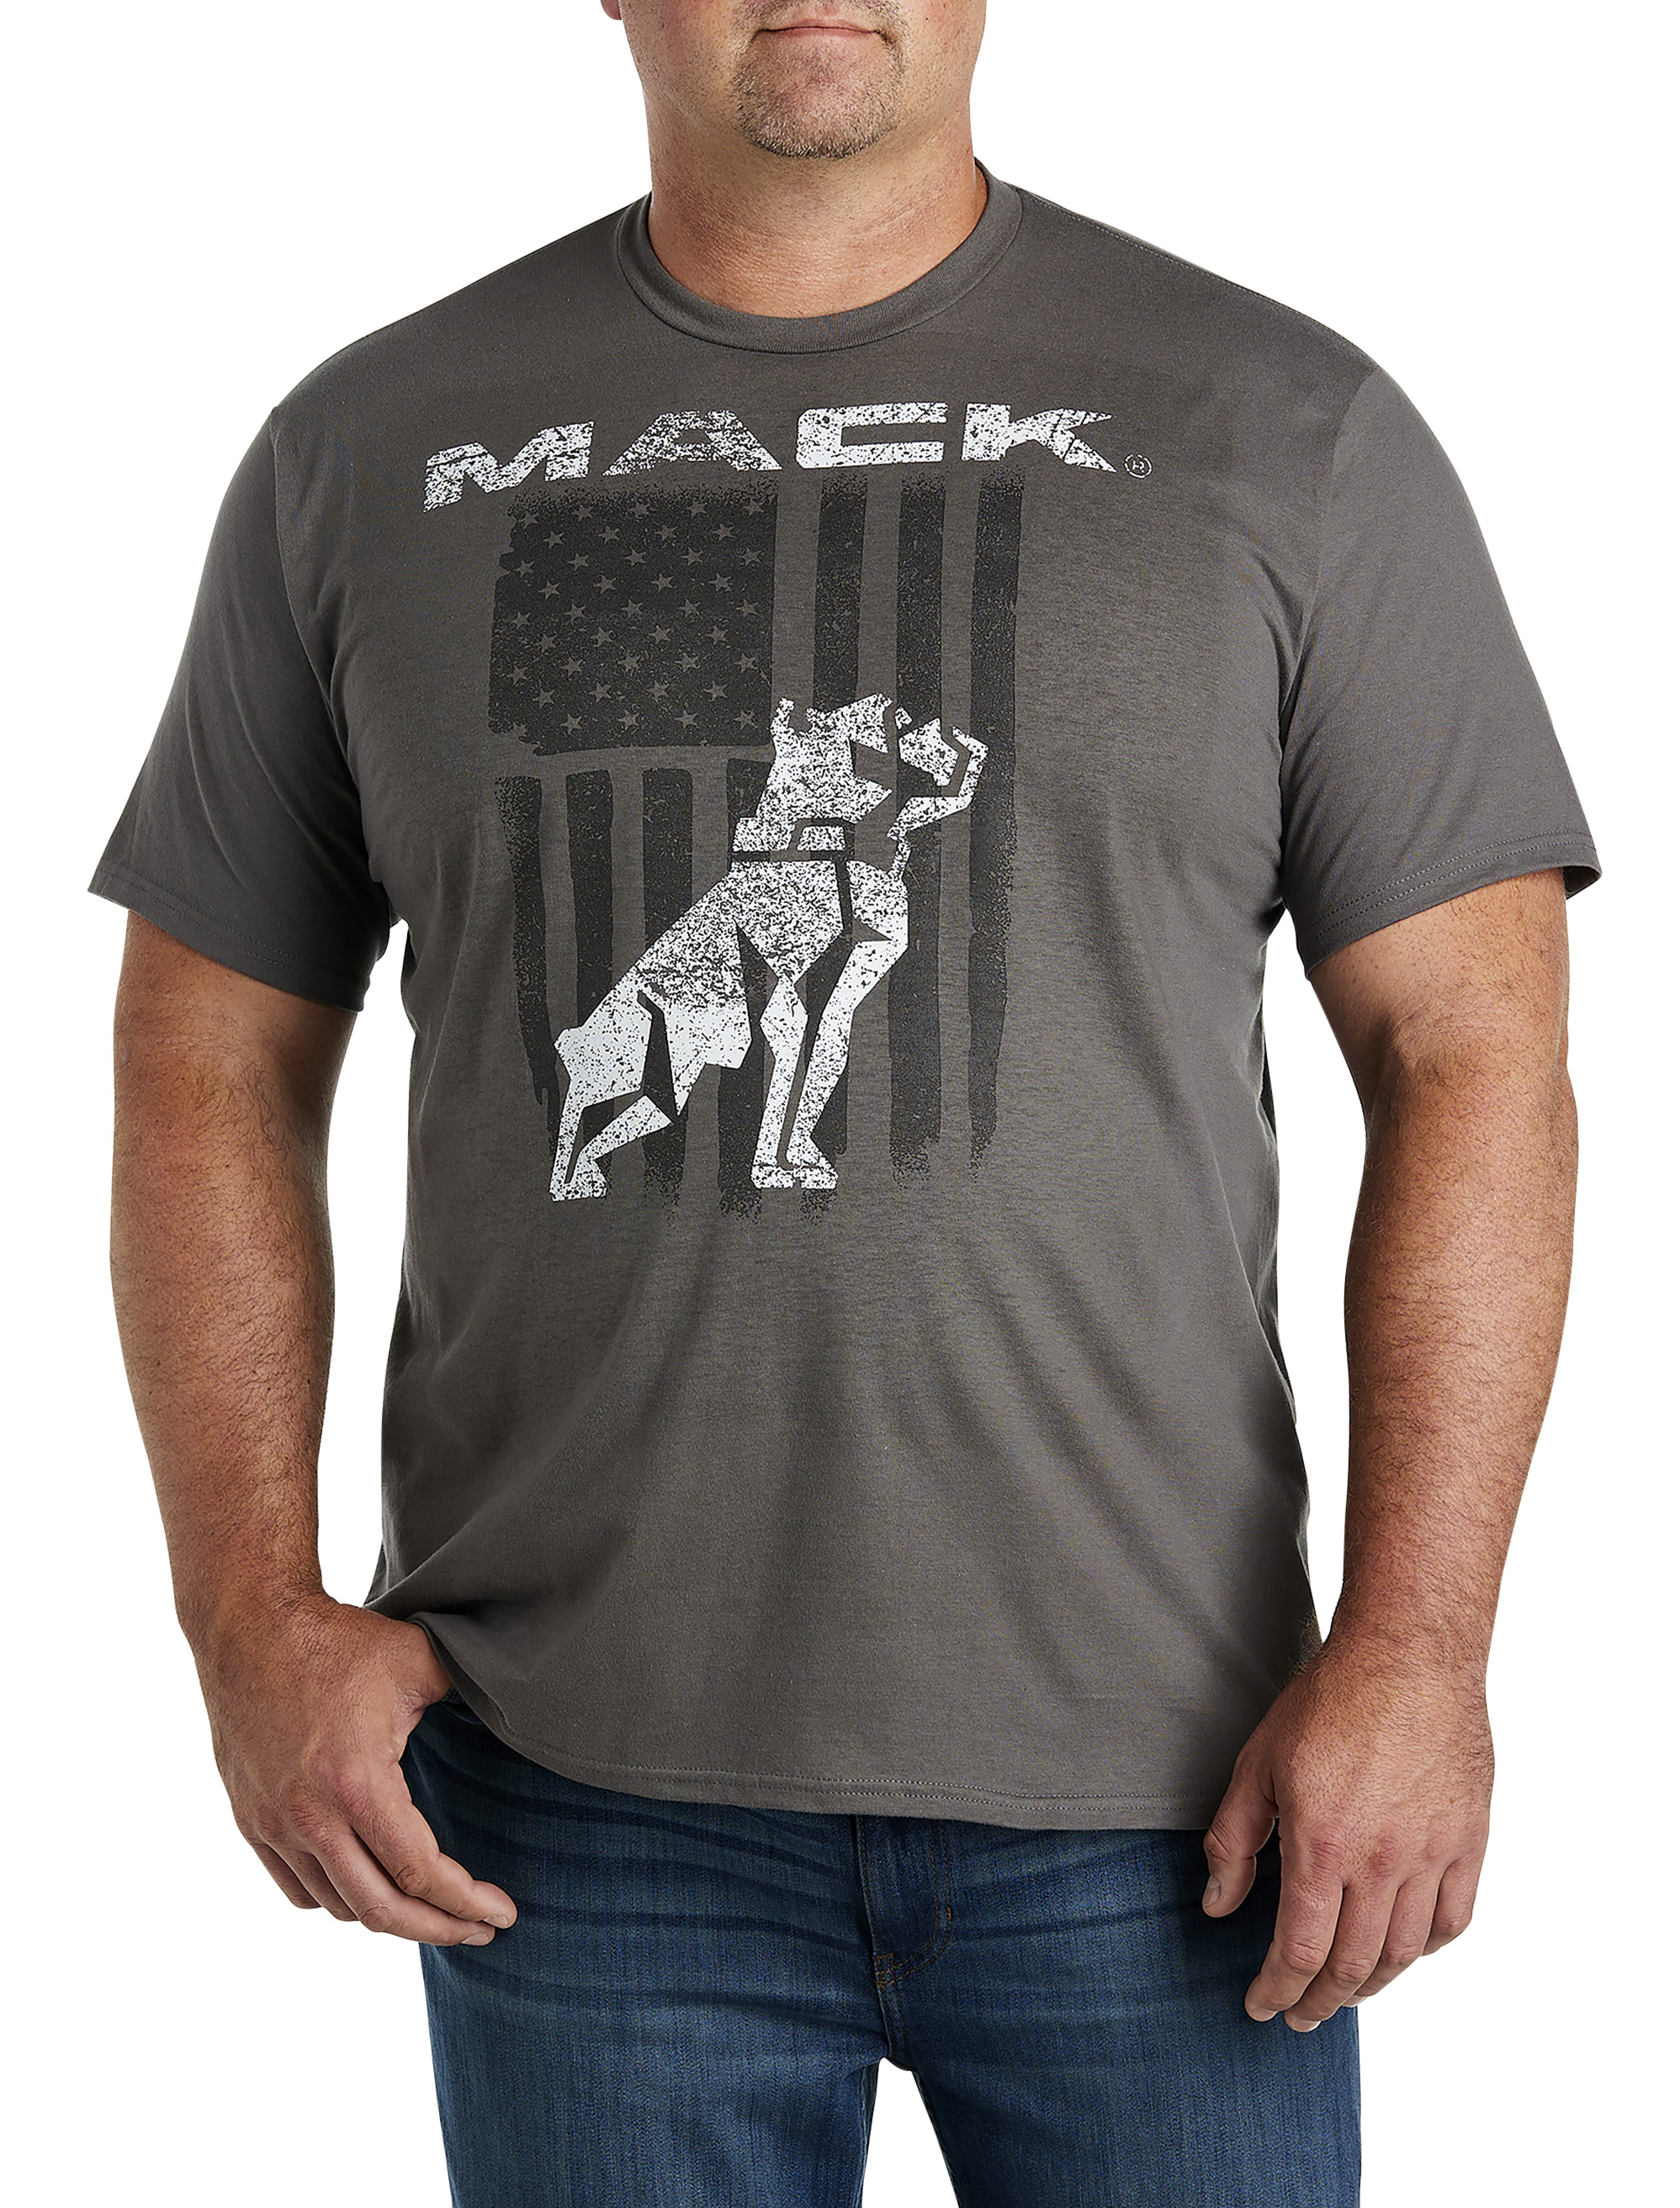 Mack Truck Graphic Tee